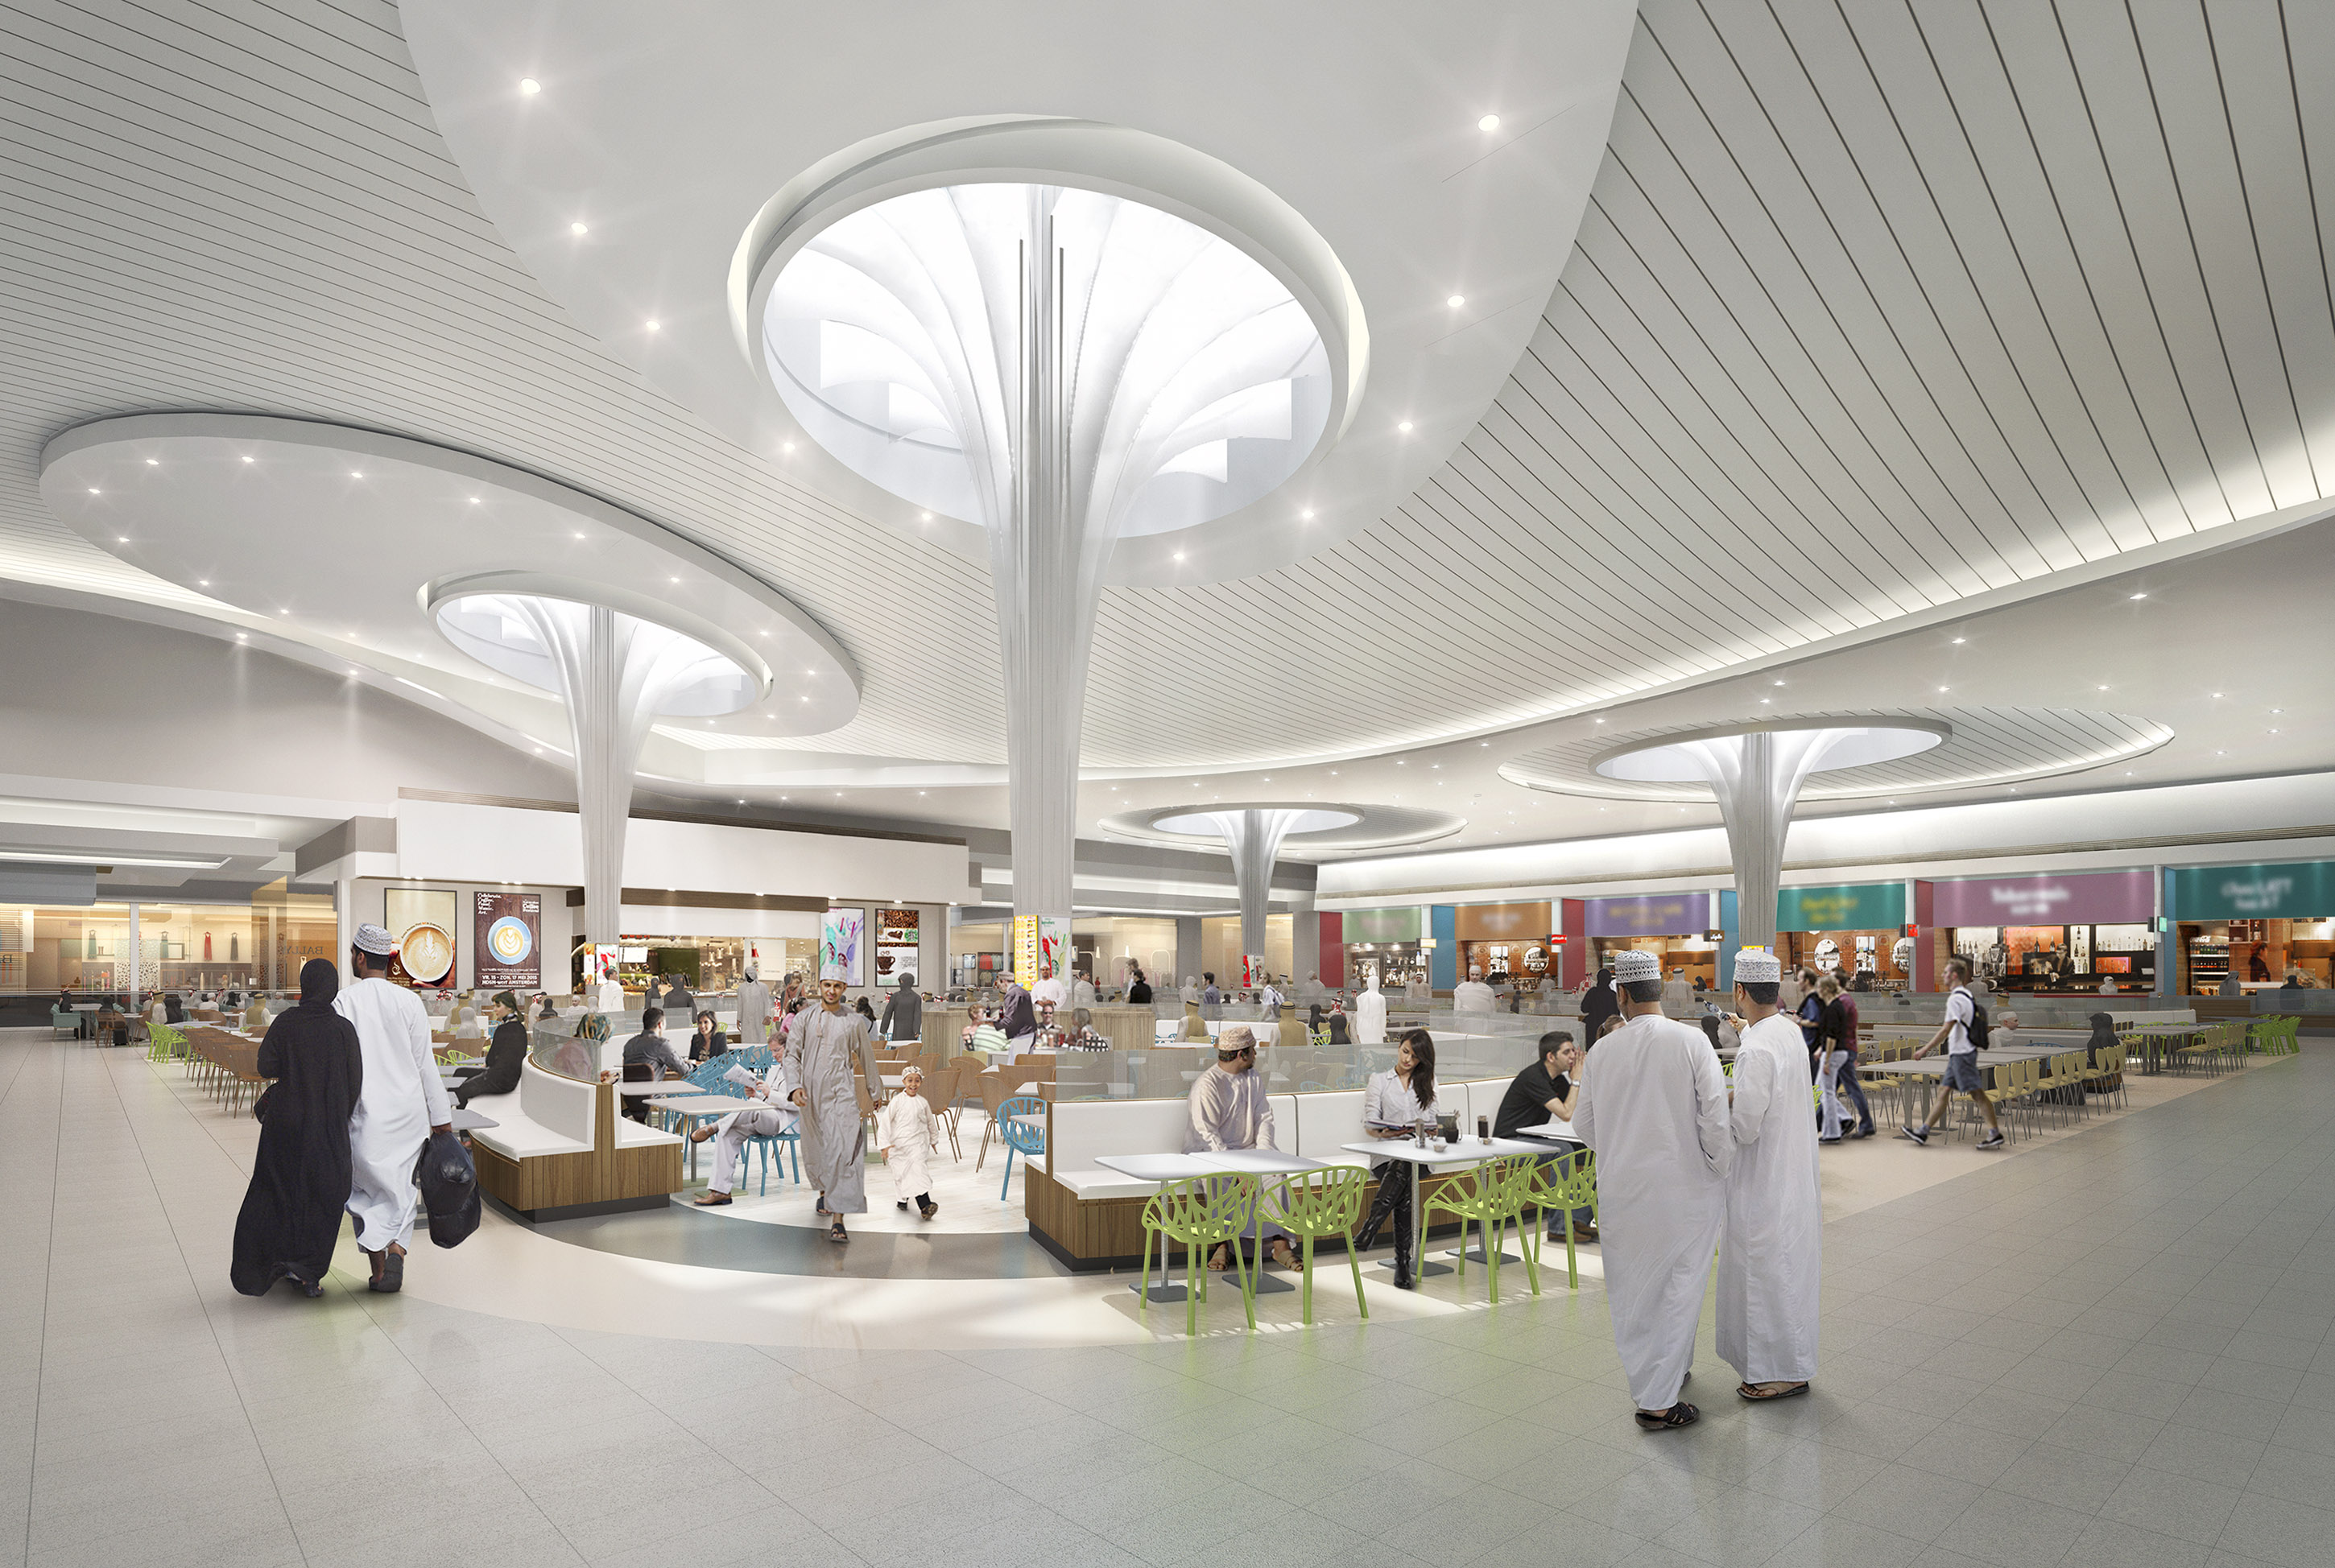 Snow park, 350 shops major highlight of Mall of Oman